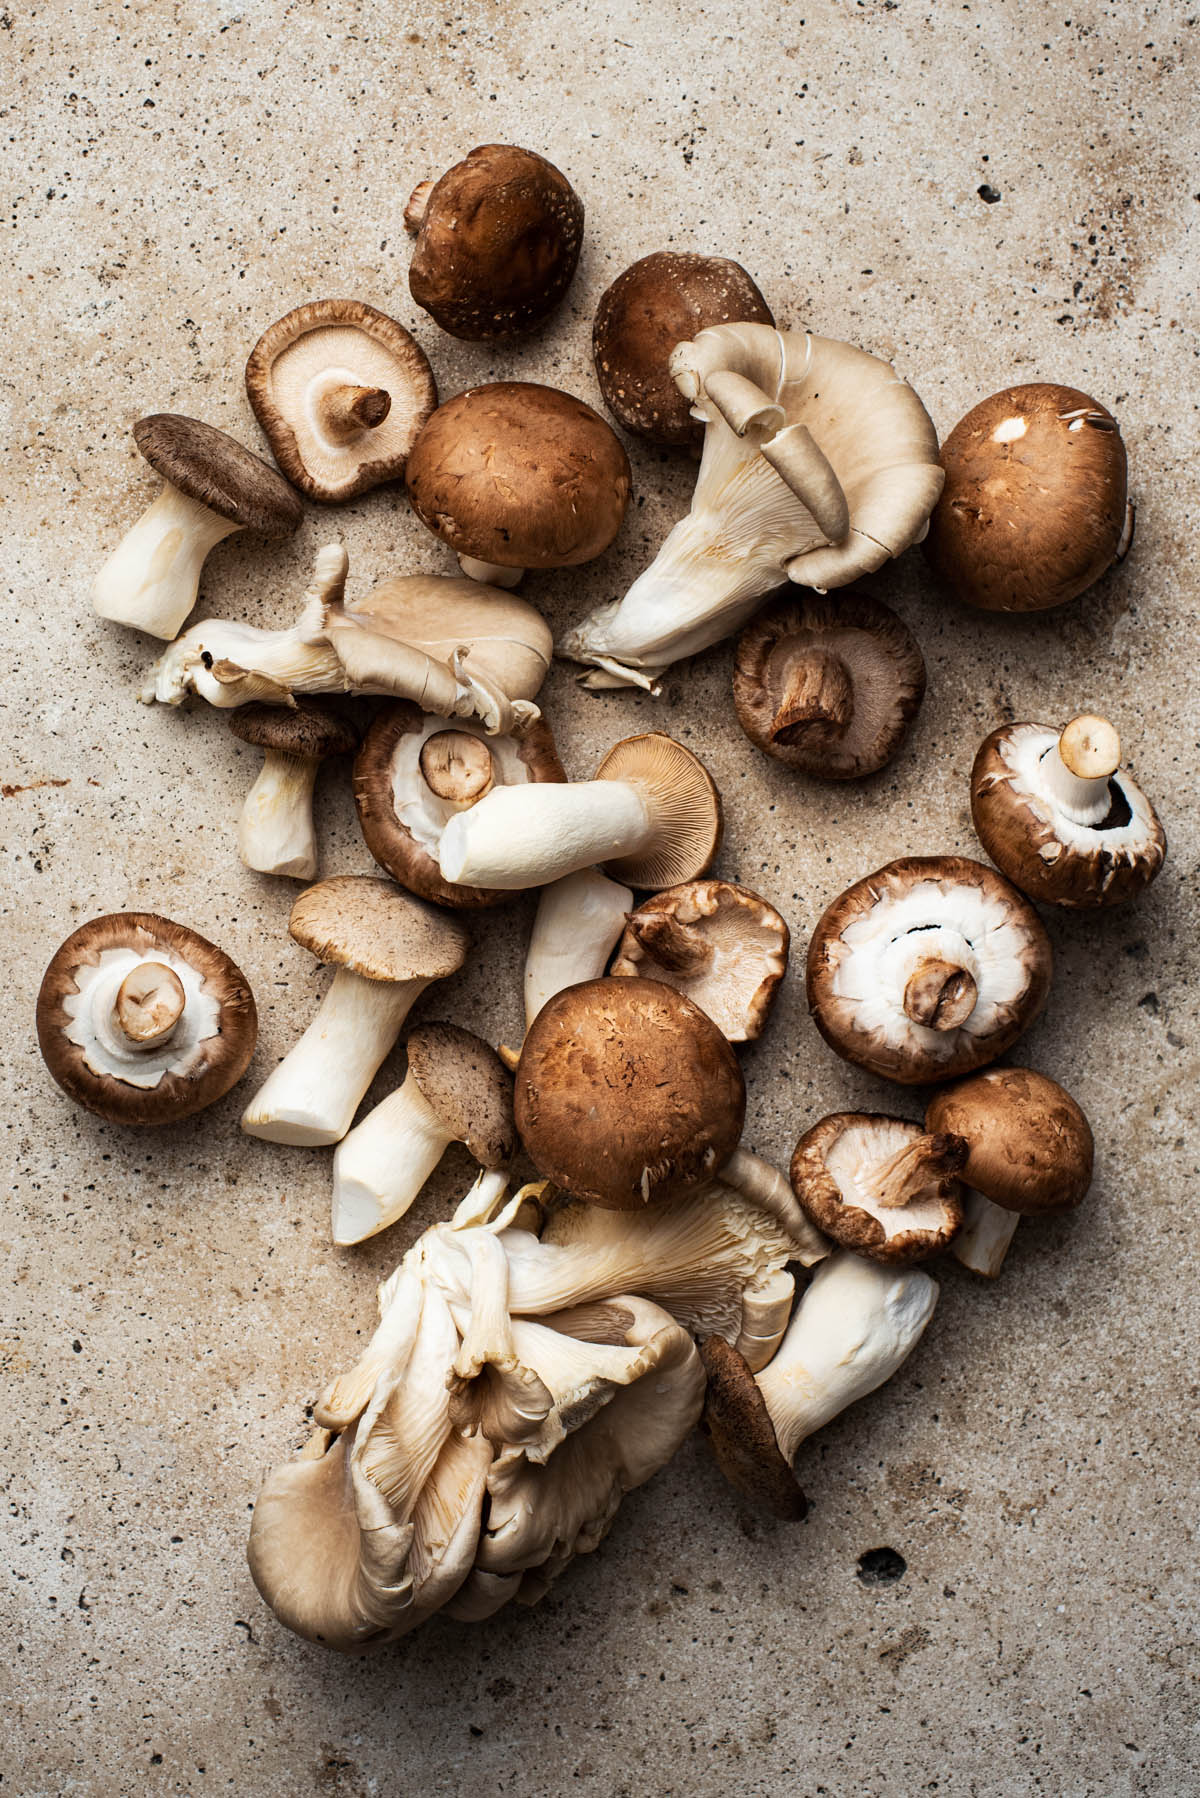 Mixed mushrooms.